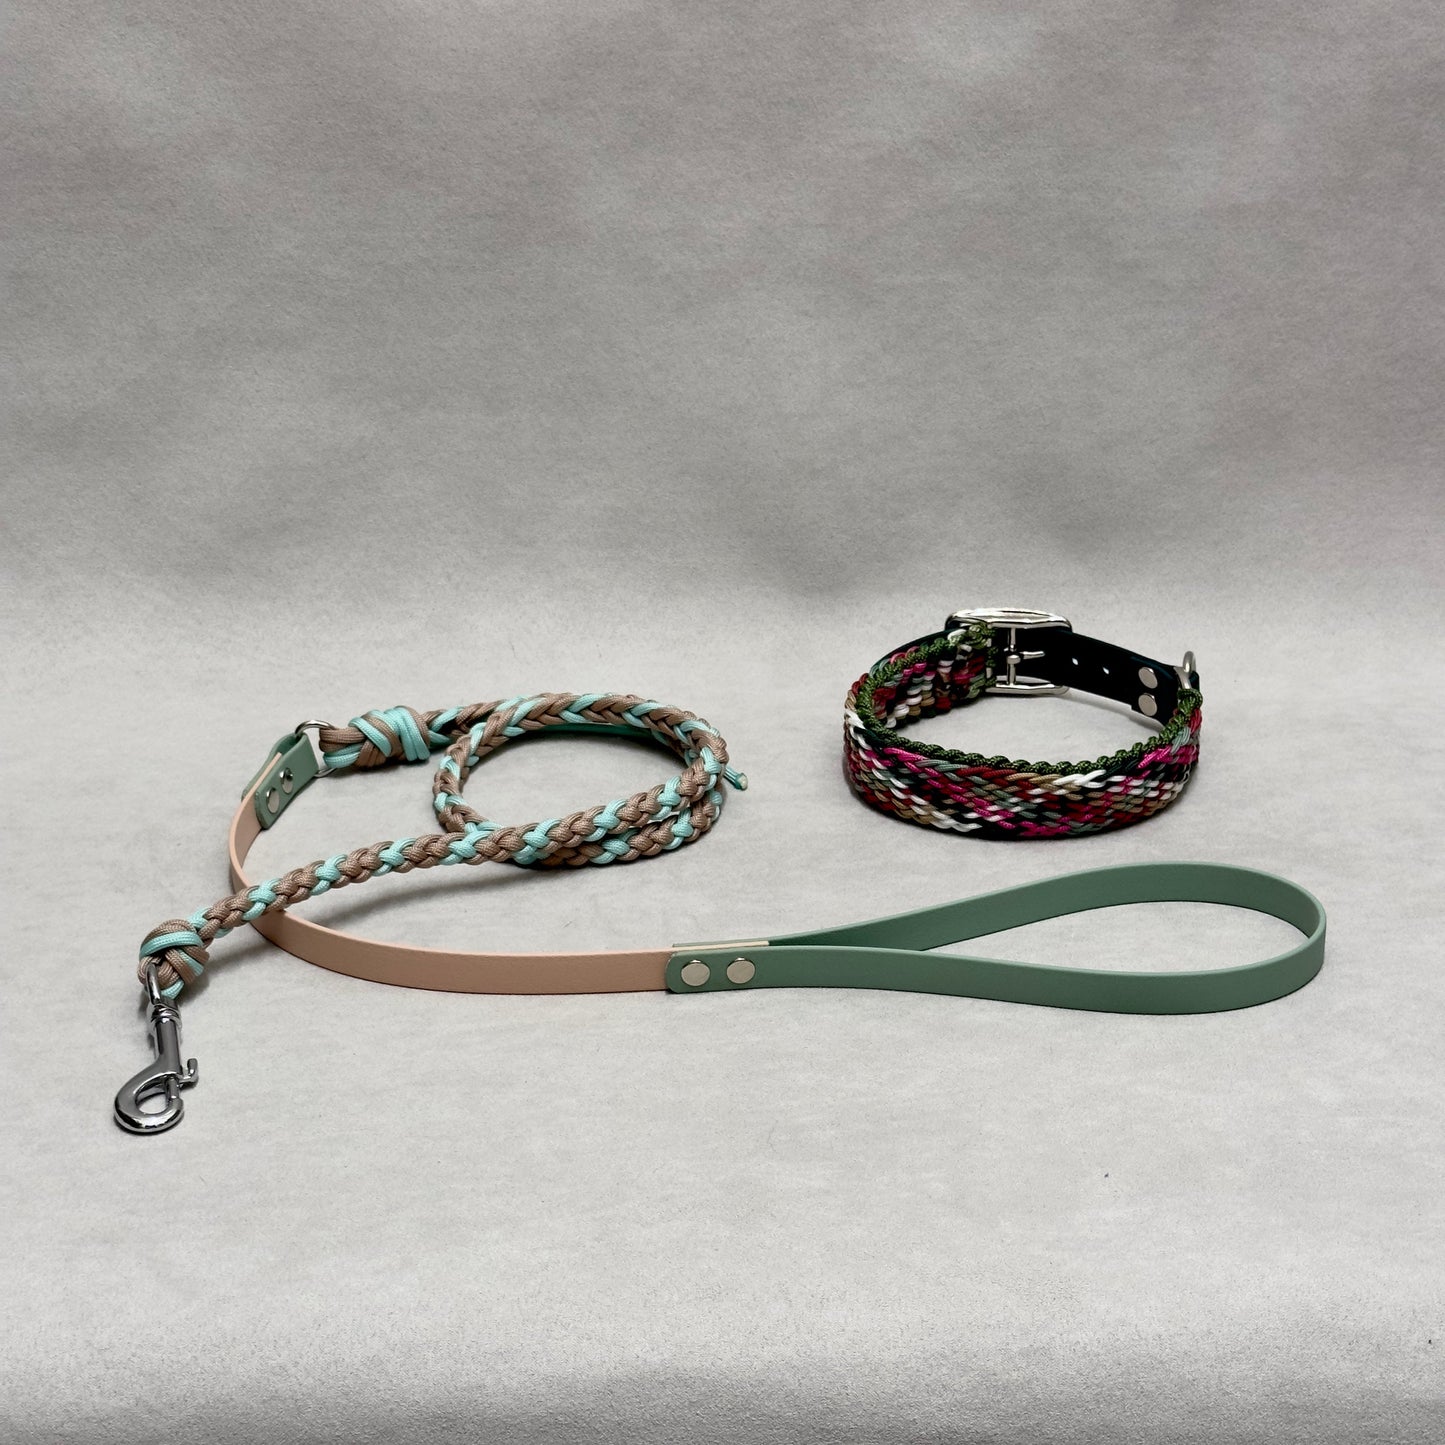 Herringbone and biothane braided leash 16mm